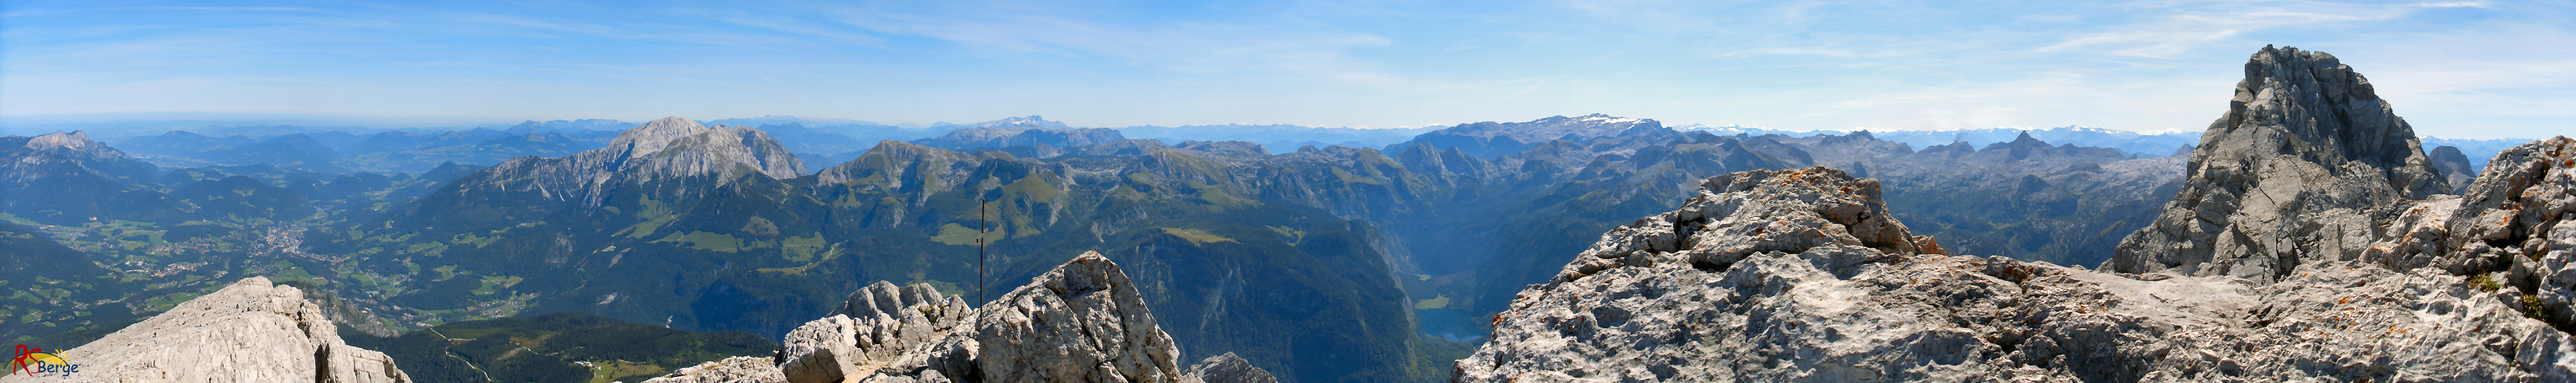 Wanderung Watzmann in den Berchtesgadener Alpen: Panorama 1 vom Hocheck